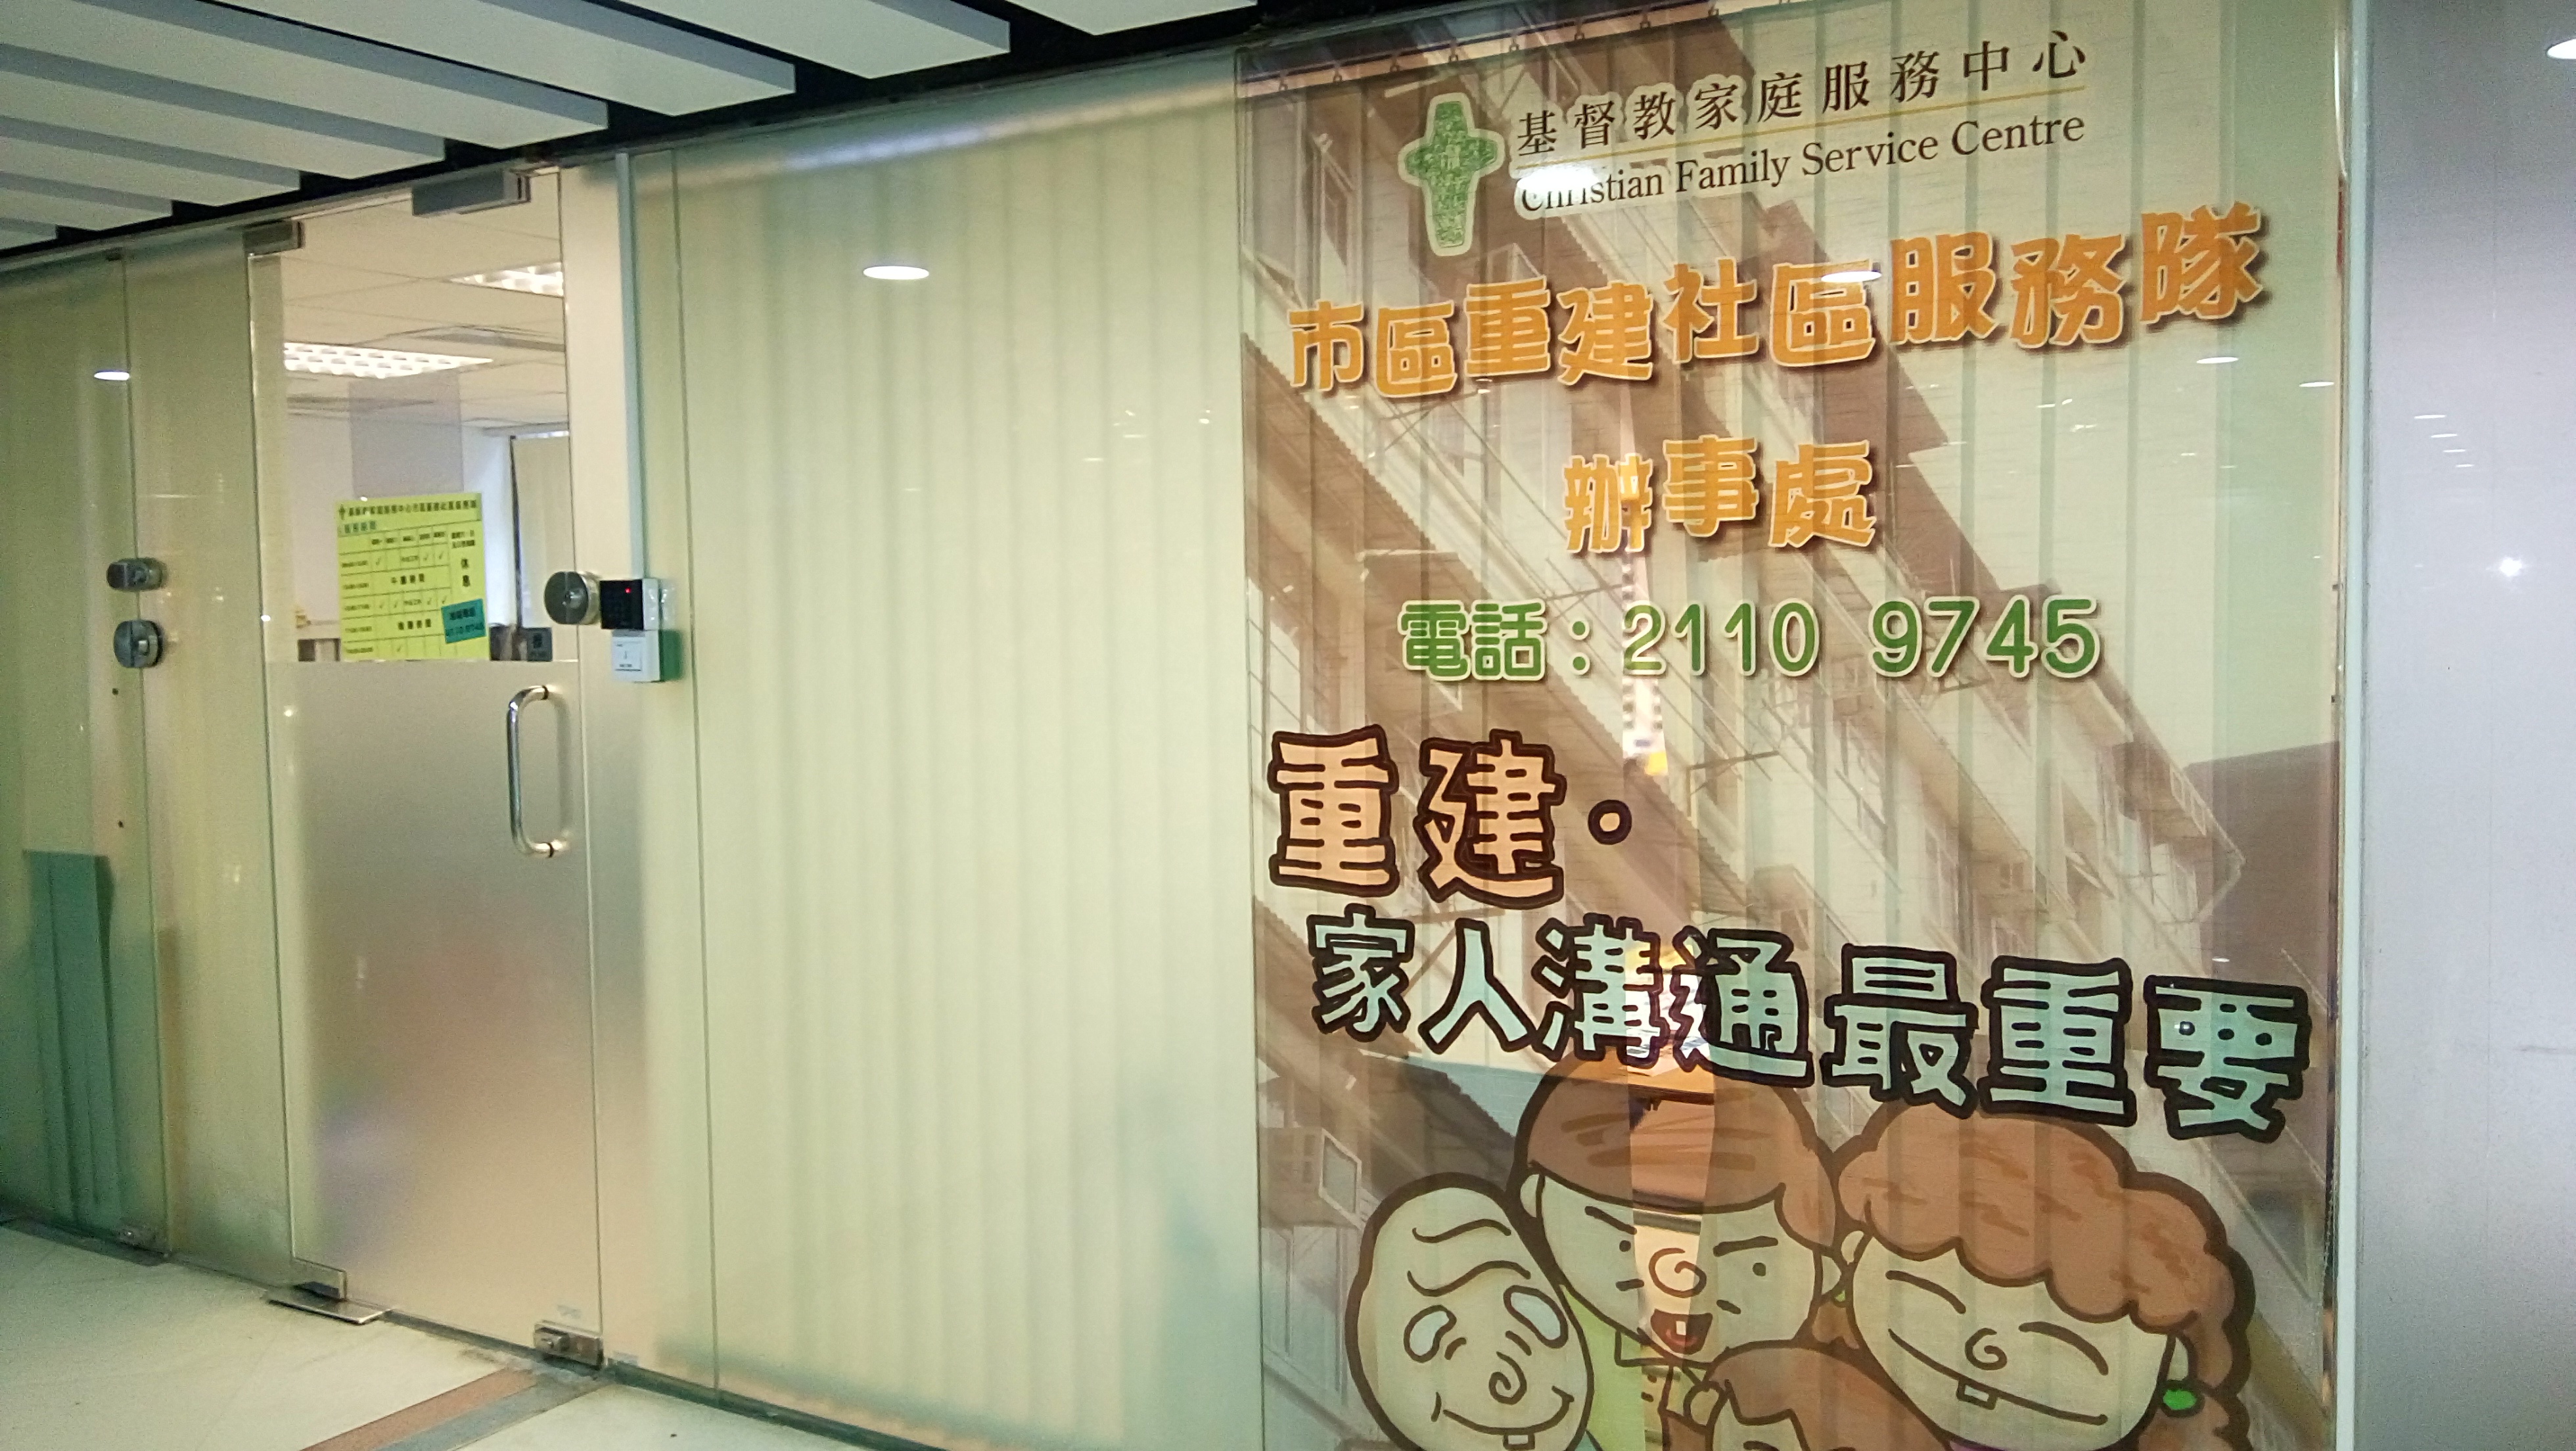 市区重建社区服务队(九龙) 办公室环境相片